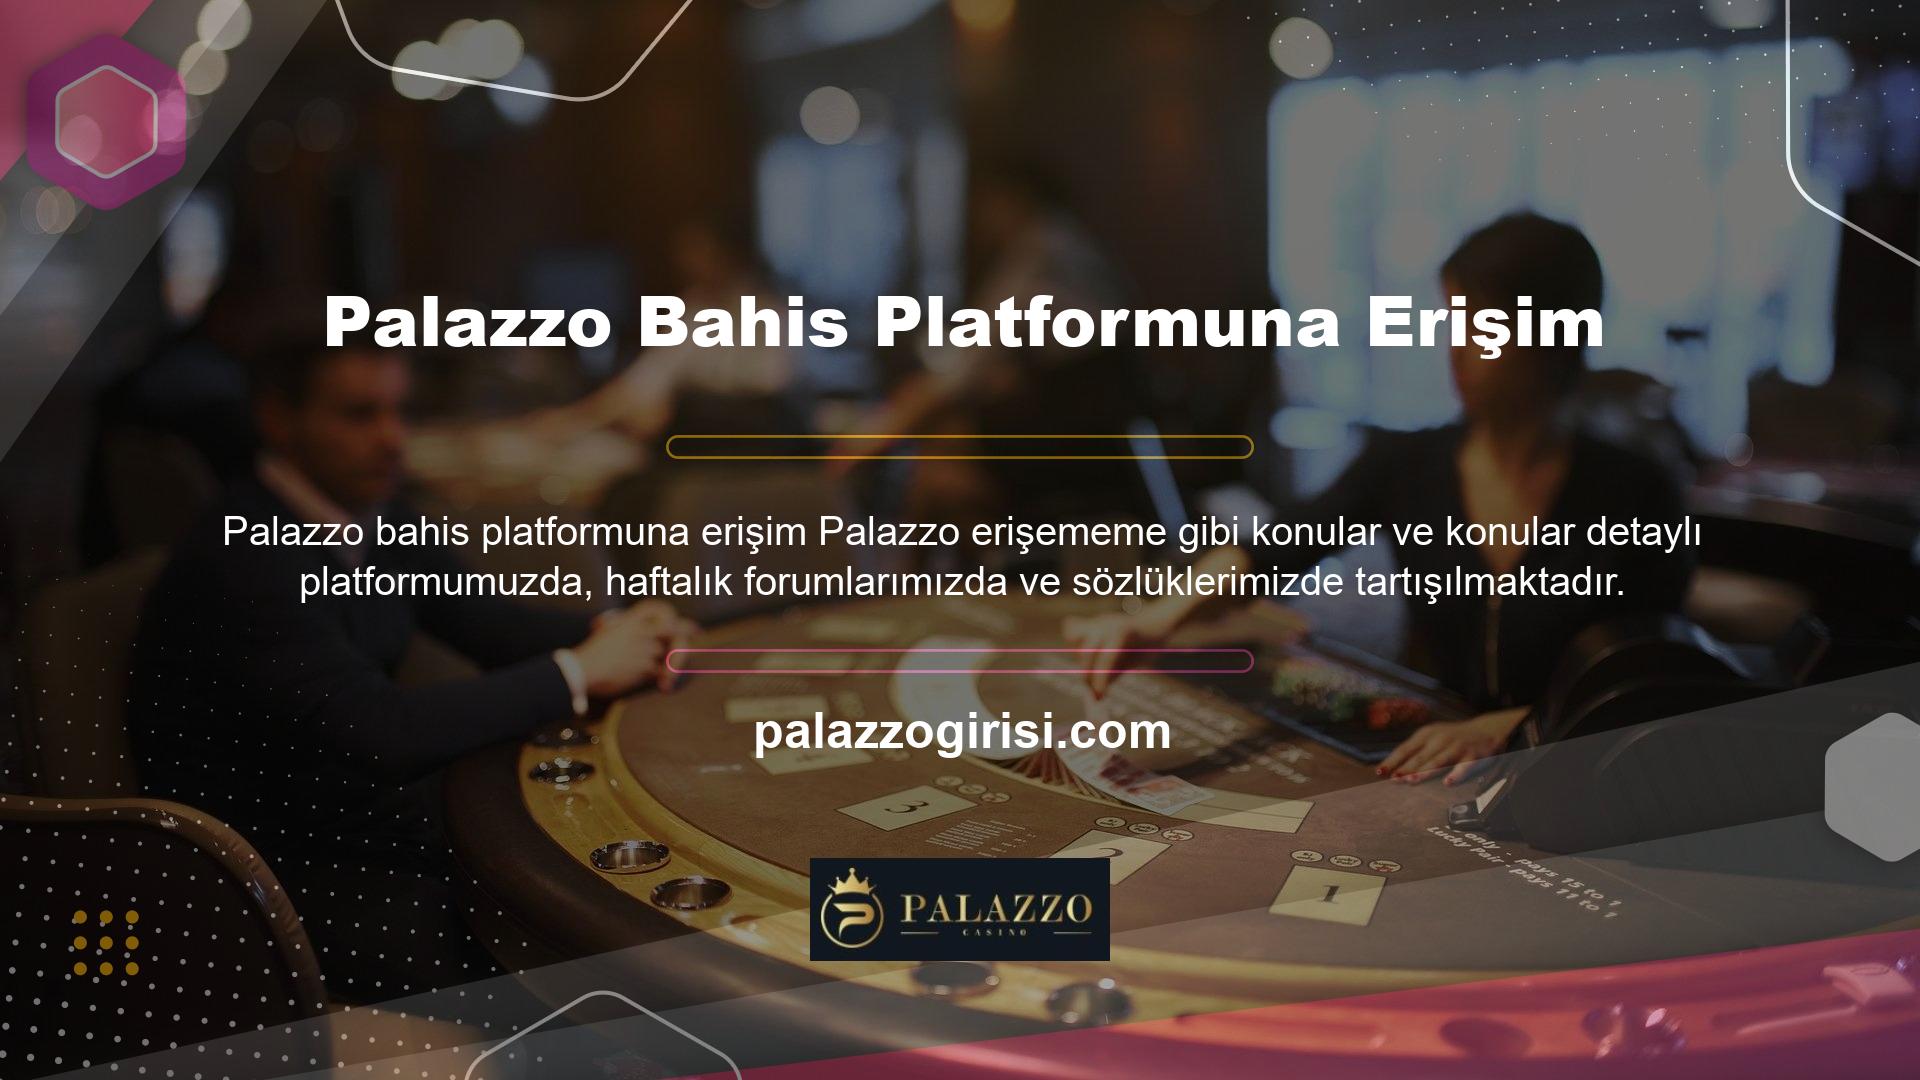 Güçlü bir web sitesi altyapısı, Palazzo on binlerce üyeye aynı anda teknik kesinti olmadan hizmet vermesine olanak tanır